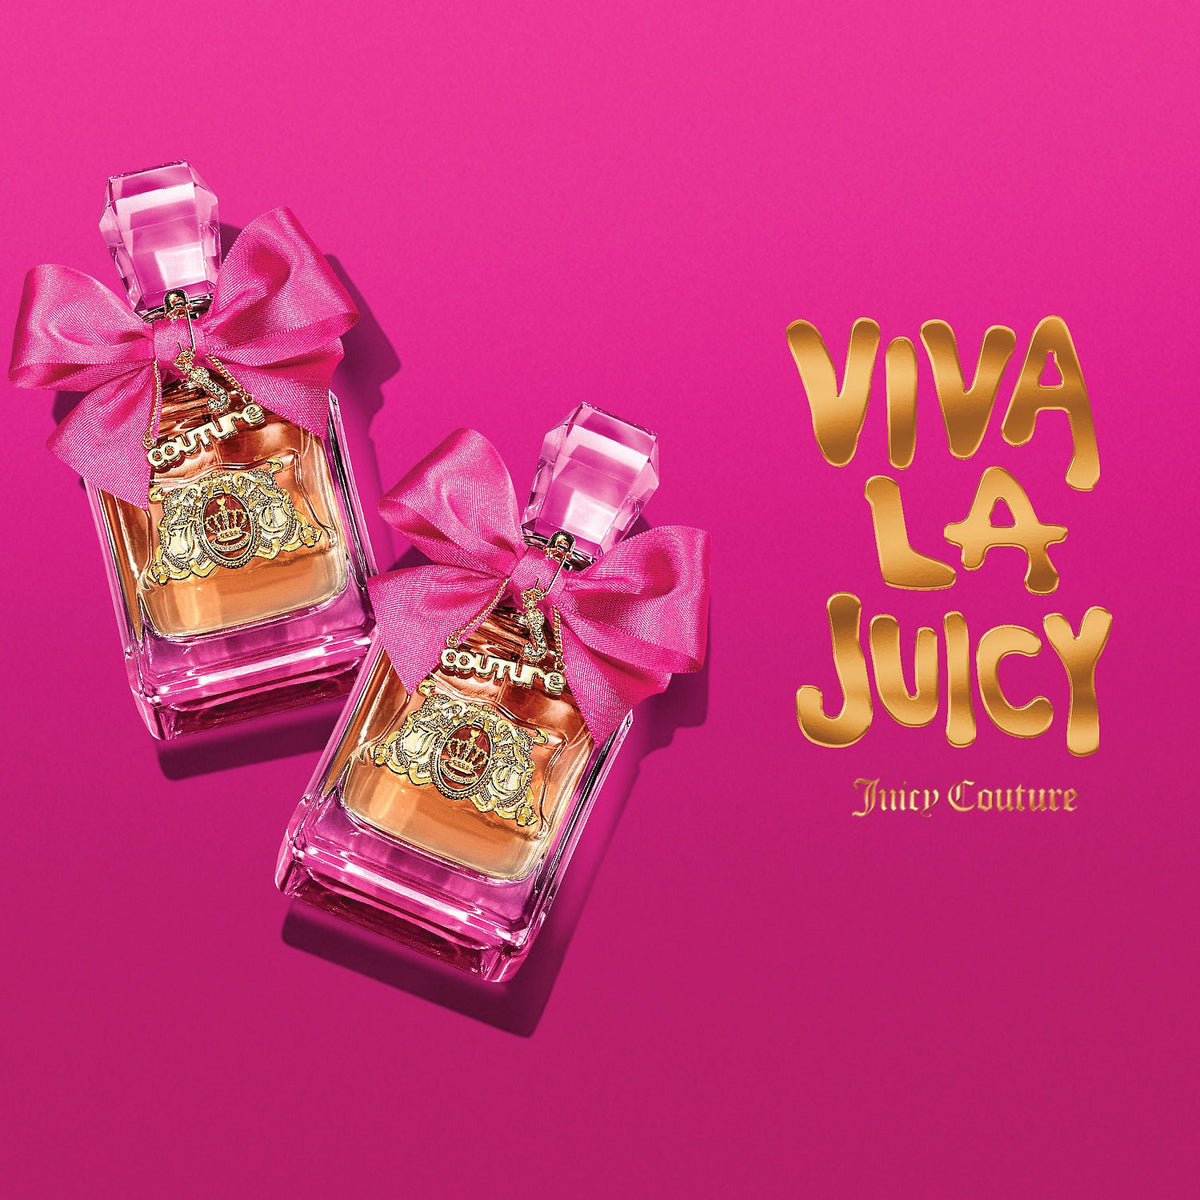 Viva La Juicy by Juicy Couture for Women - Eau de Parfum - 100ml